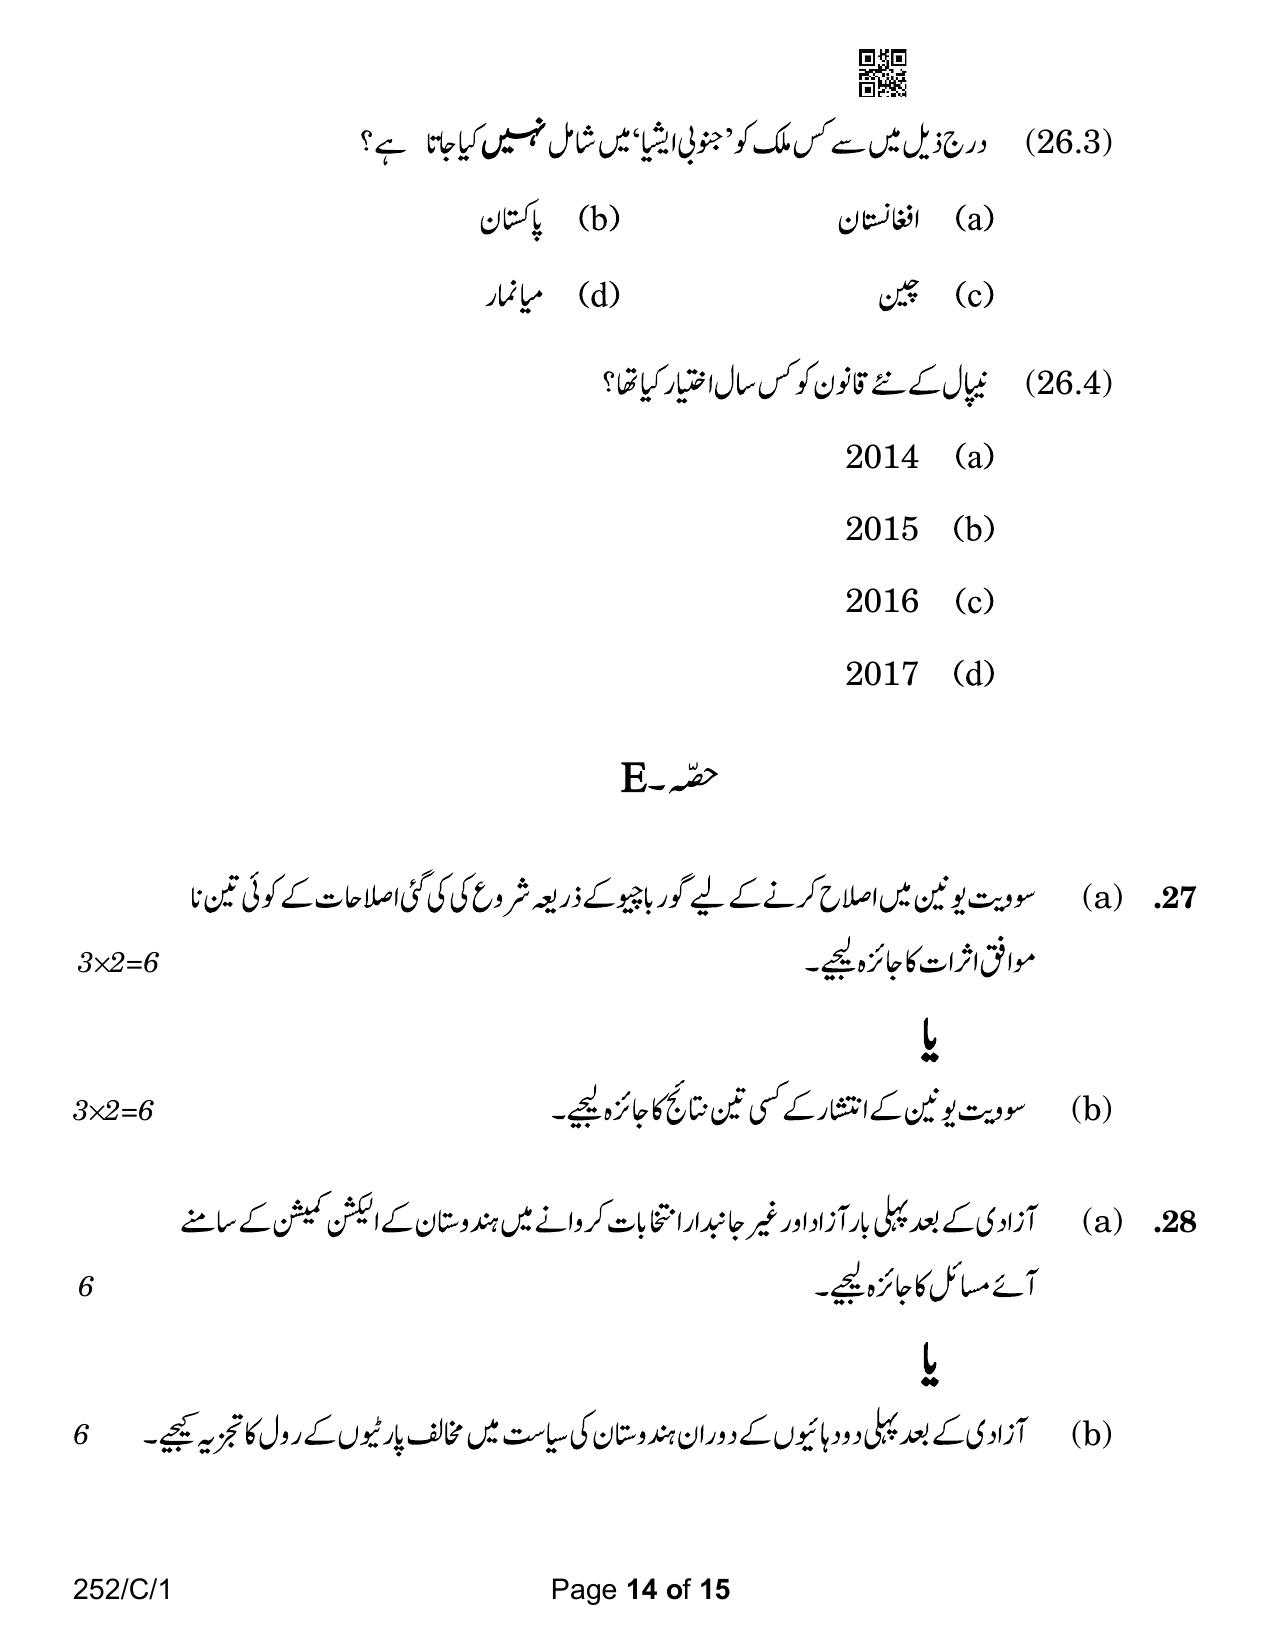 CBSE Class 12 252-1 Political Science Urdu Version 2023 (Compartment) Question Paper - Page 14